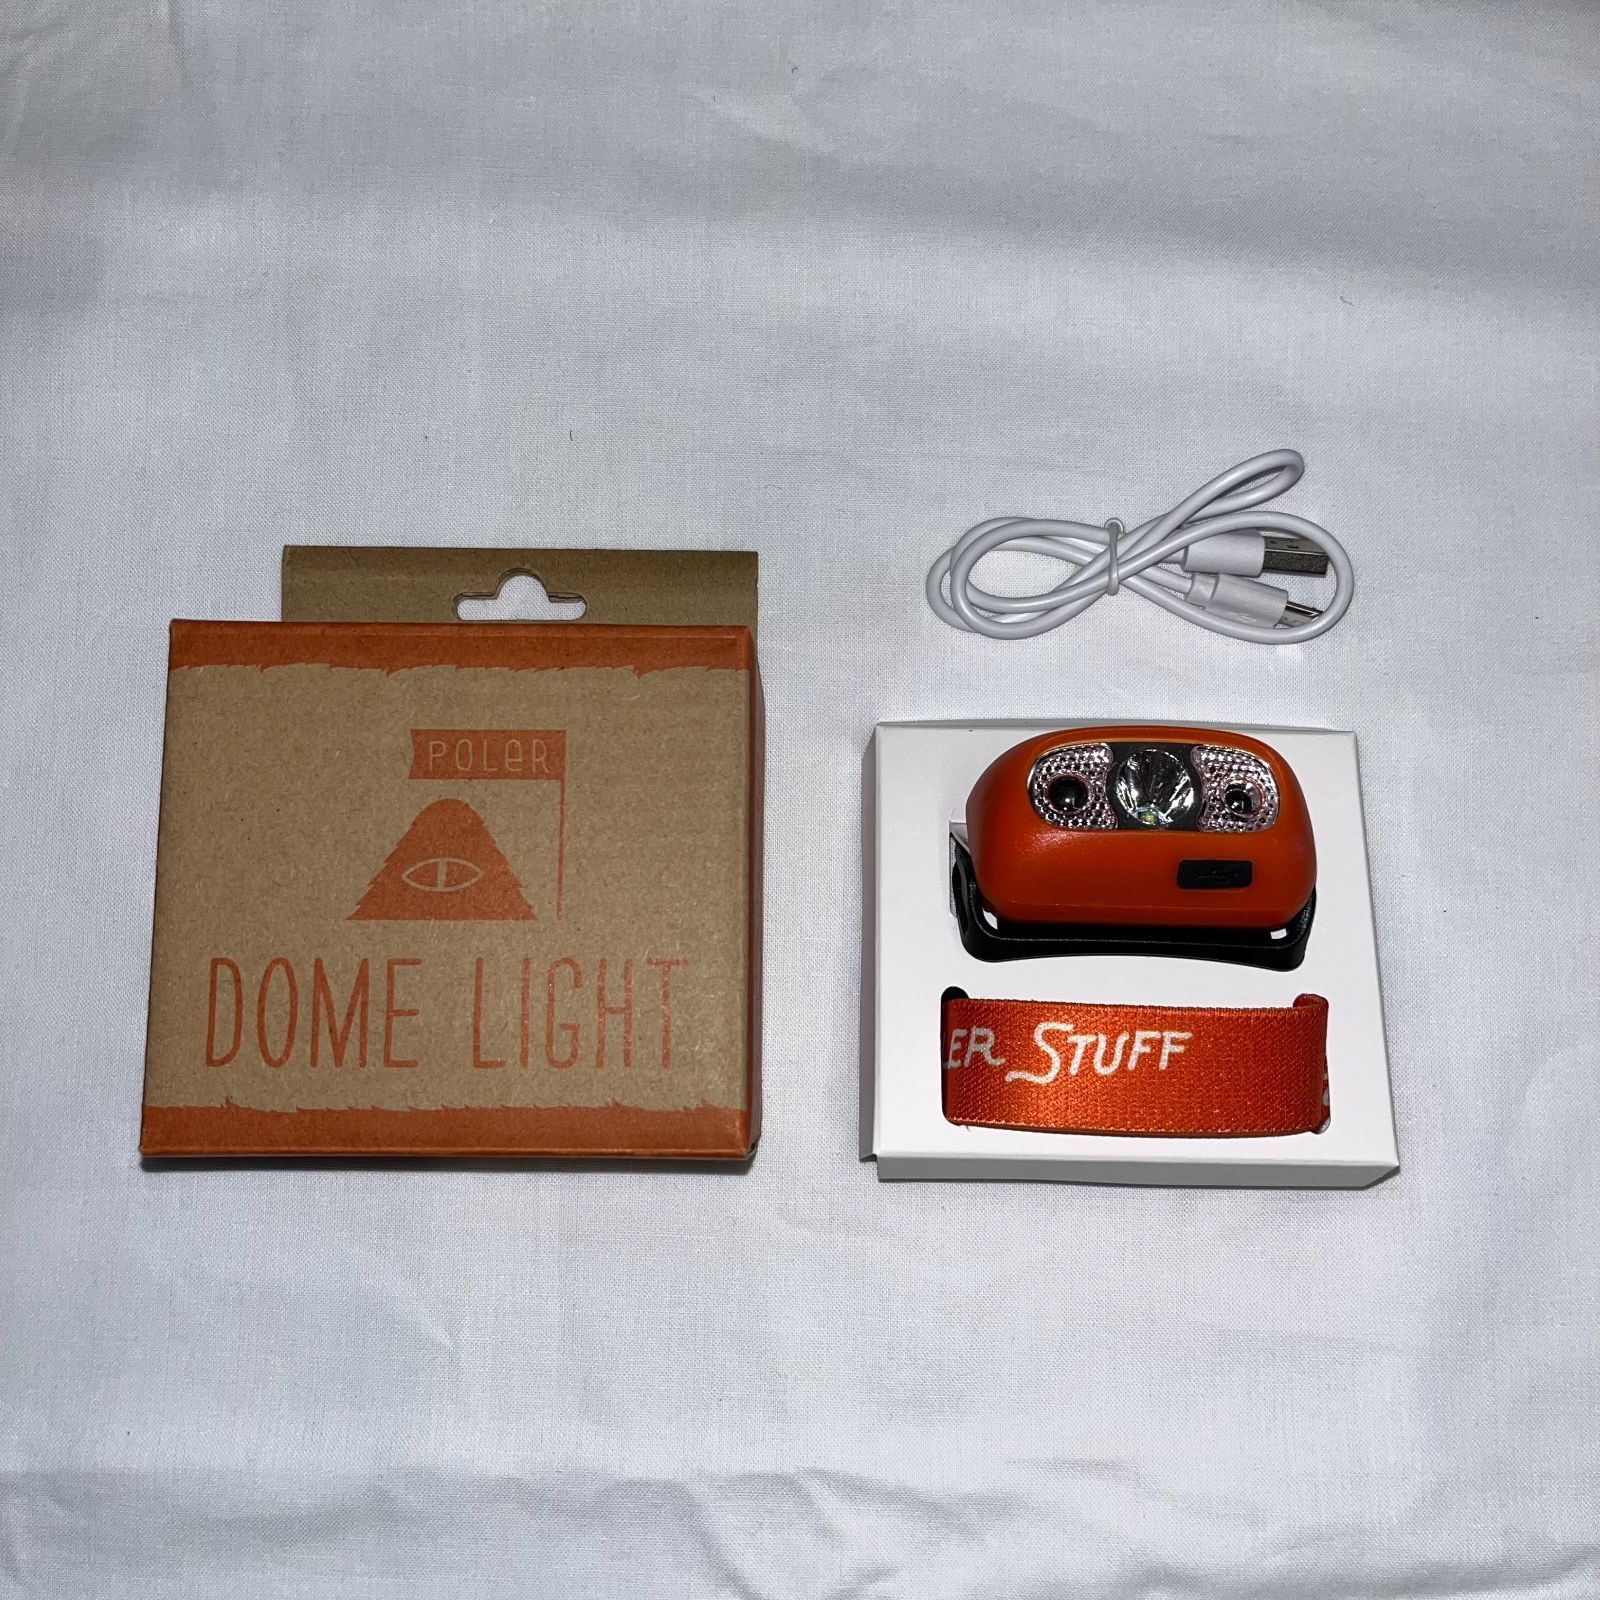 【新品】POLER LIGHT ポーラーライト LED ヘッドライト ヘッドランプ USB充電 キャンプ用品